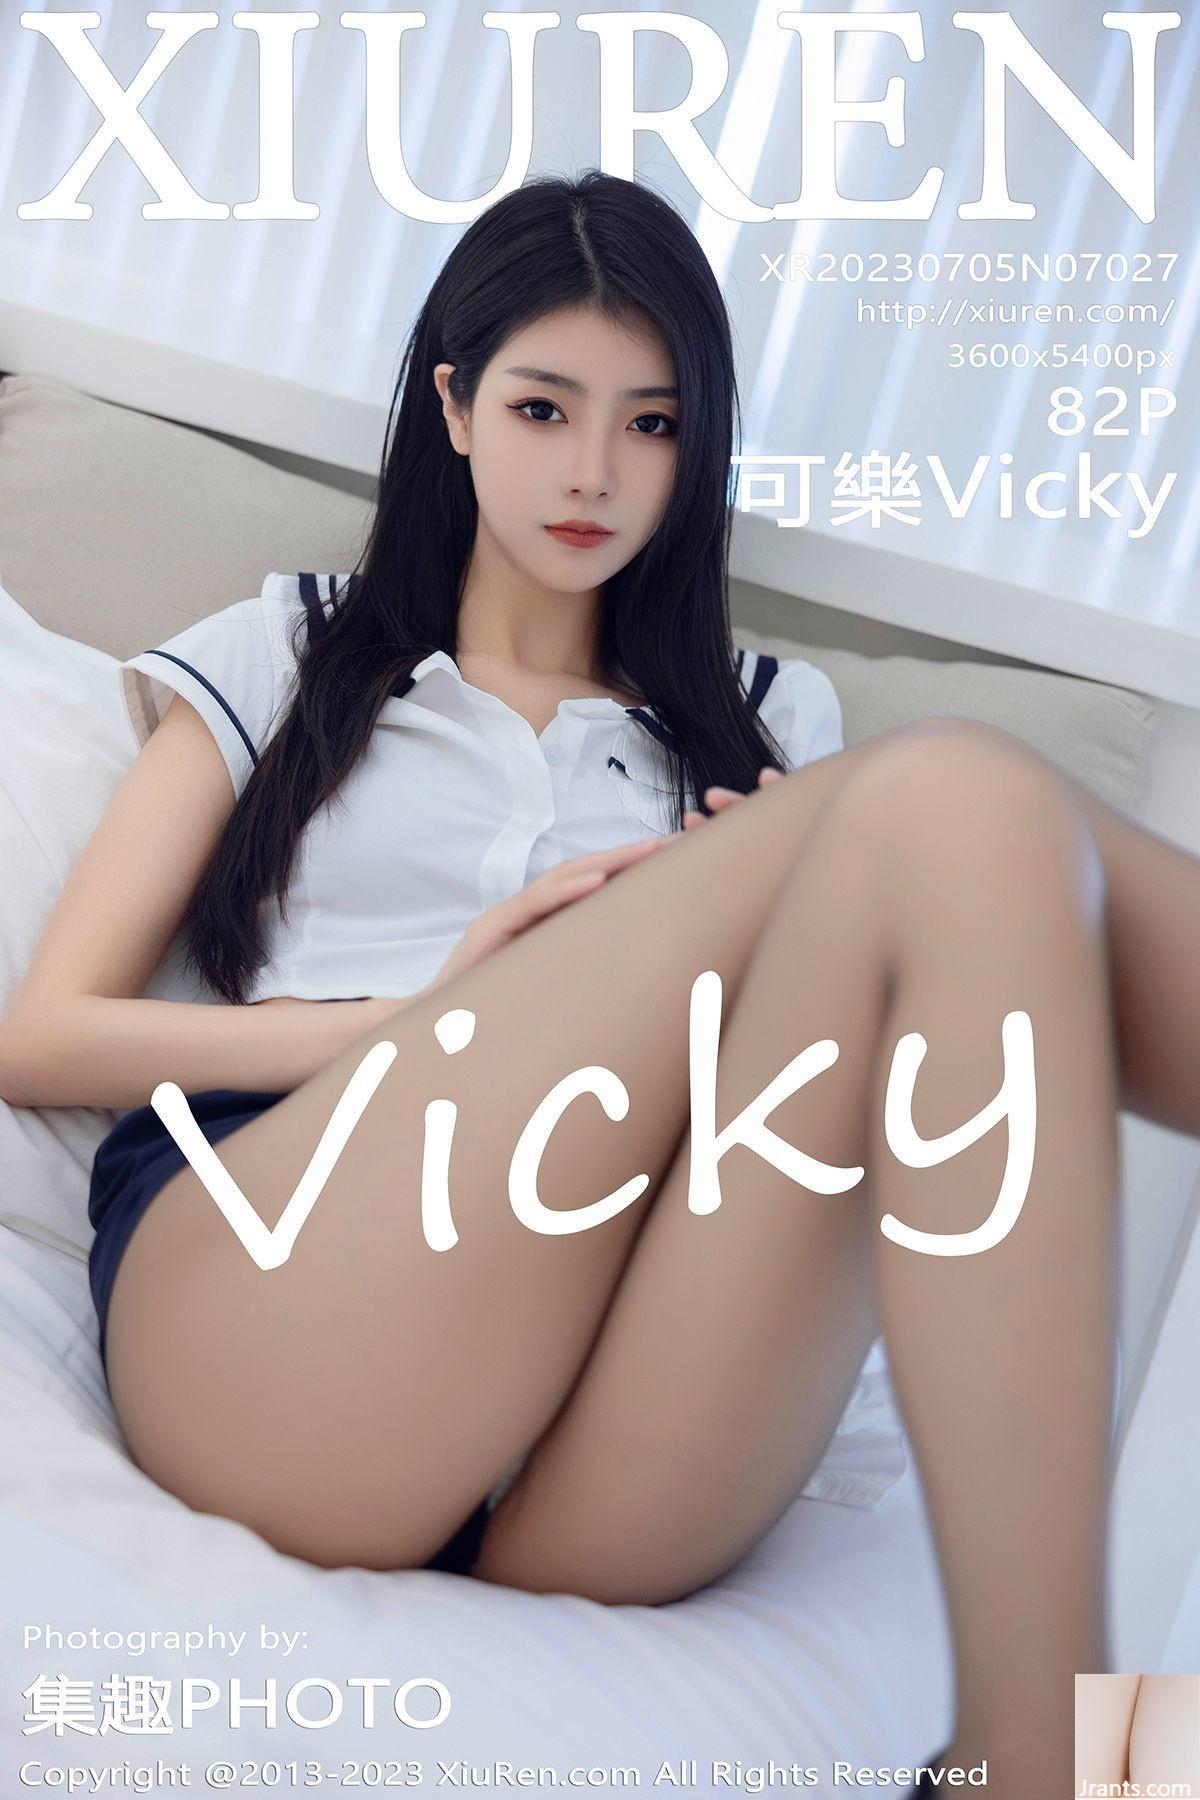 可乐Vicky 裸 爱上自拍的你可乐Vicky-精品套图-女神写真图nsxzt .com